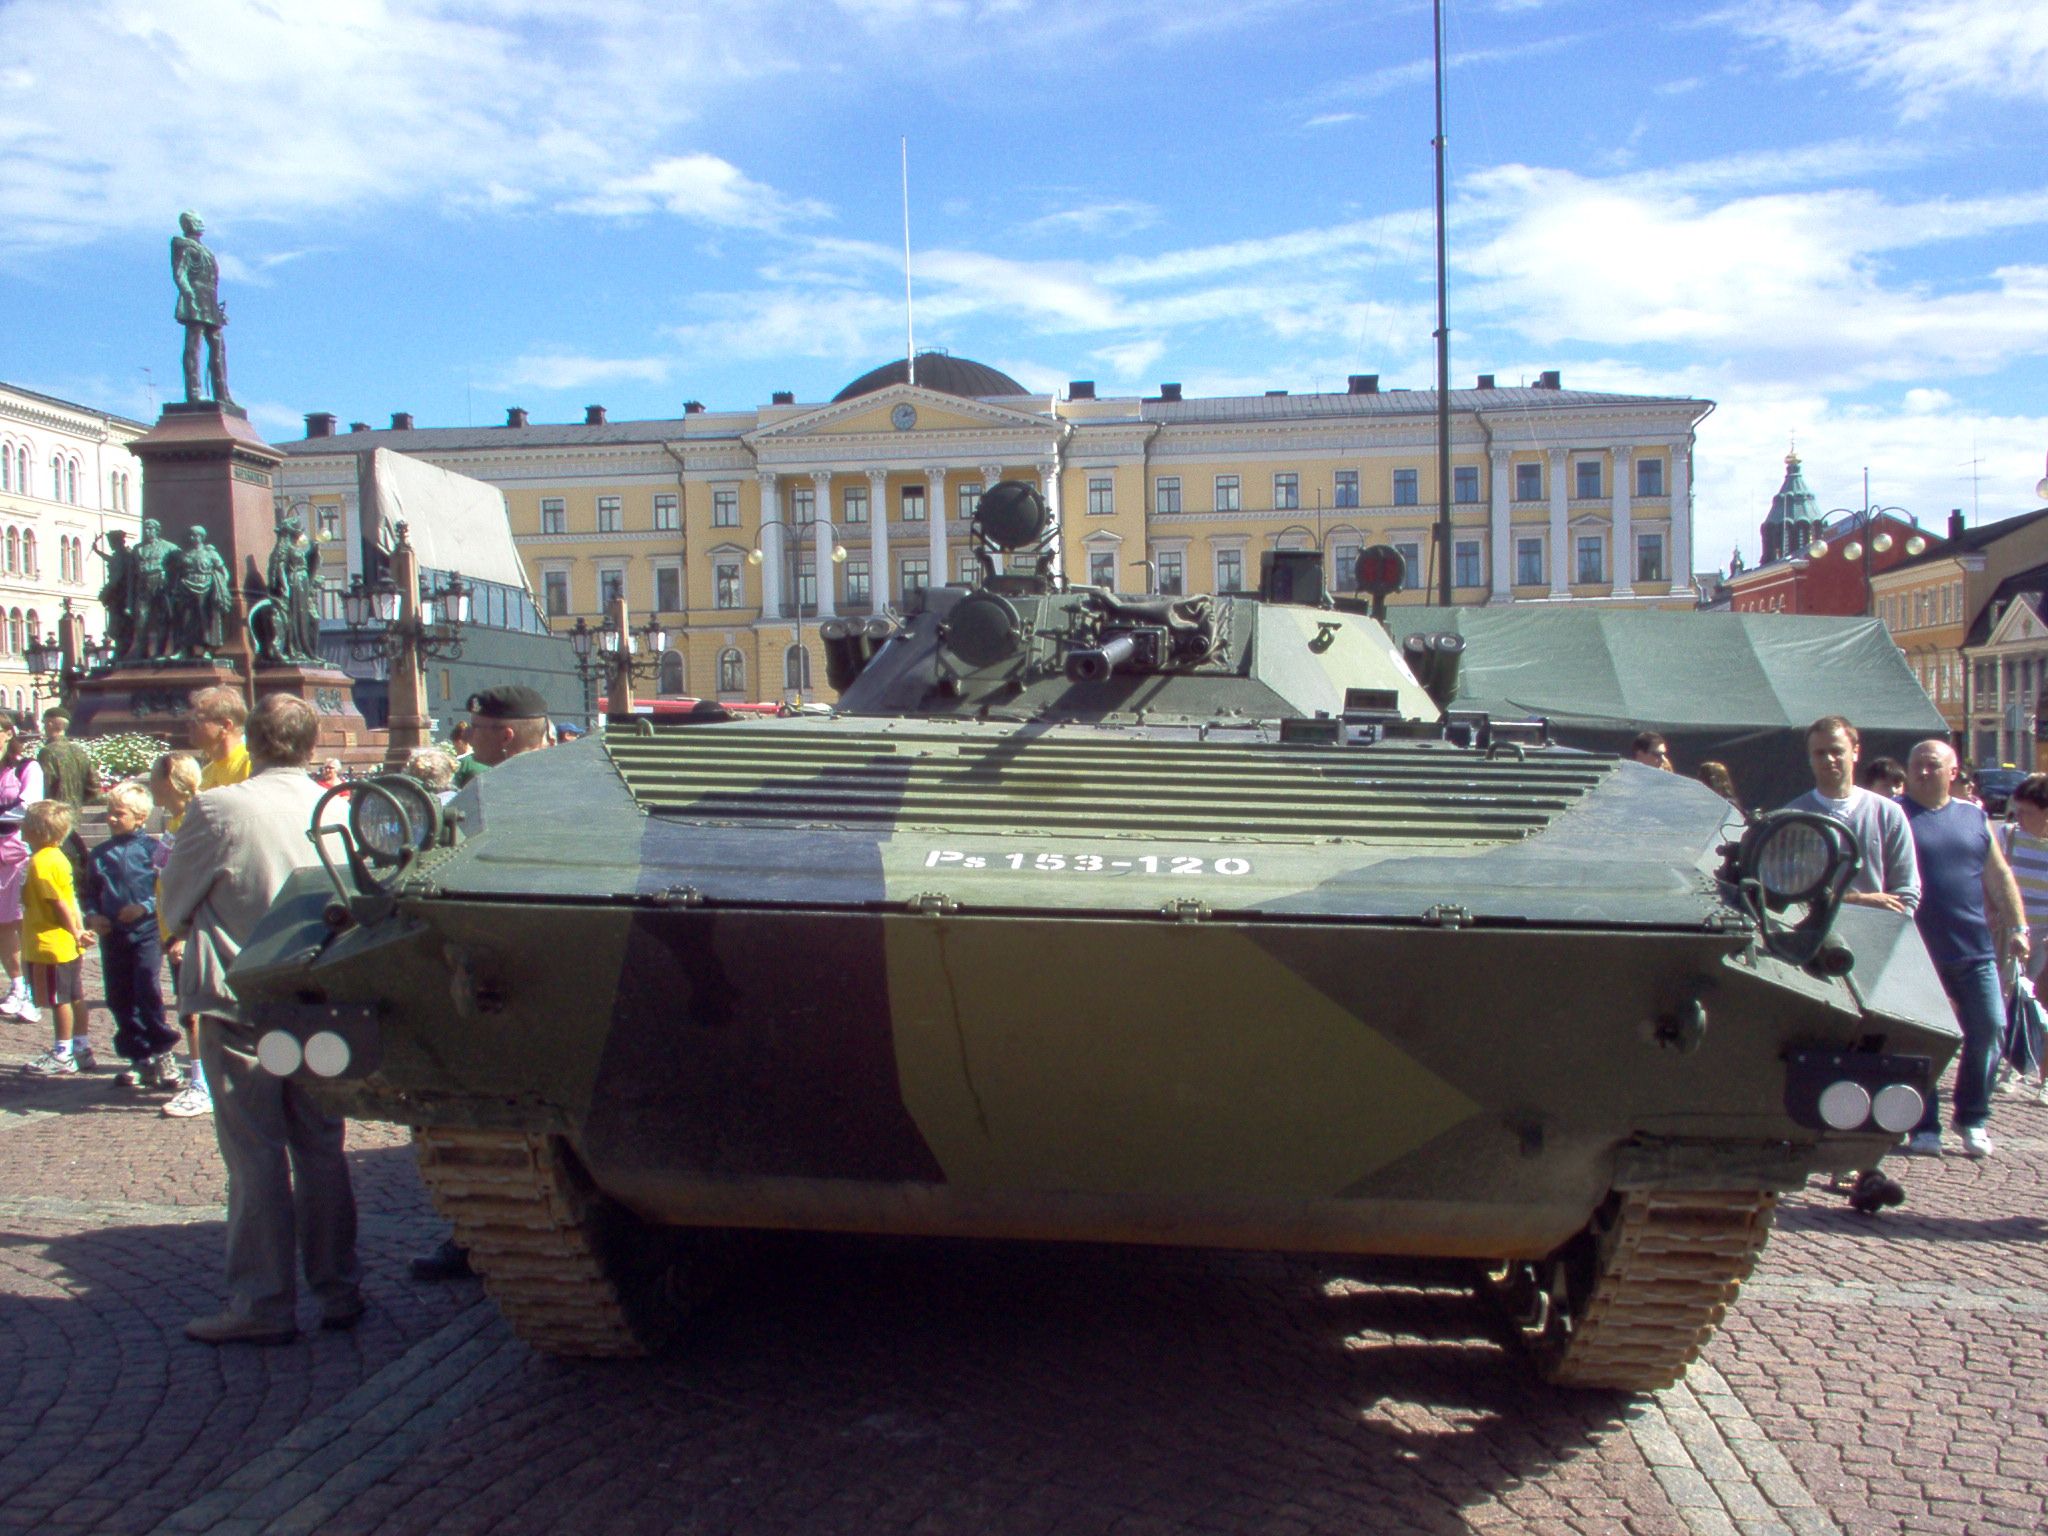 BMP-2 - Finnish Army | Aircraft of World War II - WW2Aircraft.net Forums